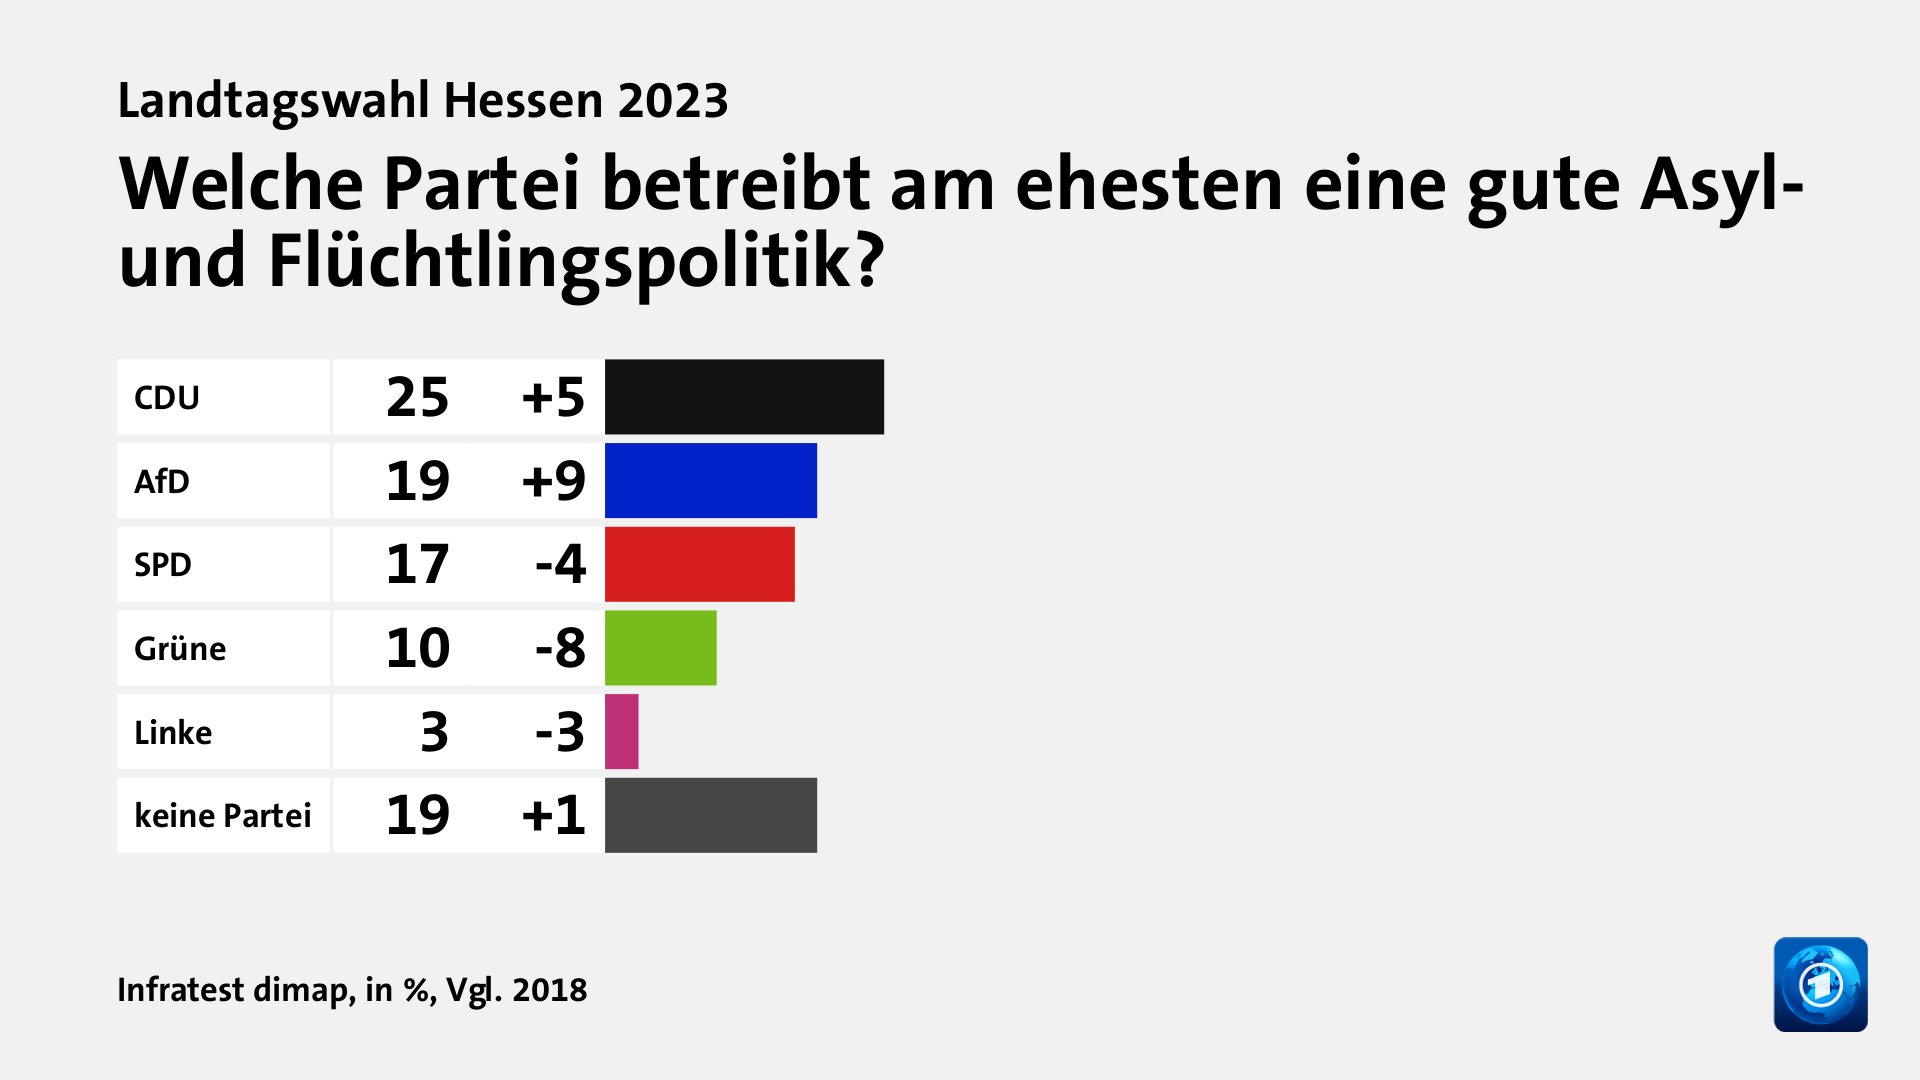 Welche Partei betreibt am ehesten eine gute Asyl- und Flüchtlingspolitik?, in %, Vgl. 2018: CDU 25, AfD 19, SPD 17, Grüne 10, Linke 3, keine Partei 19, Quelle: Infratest dimap